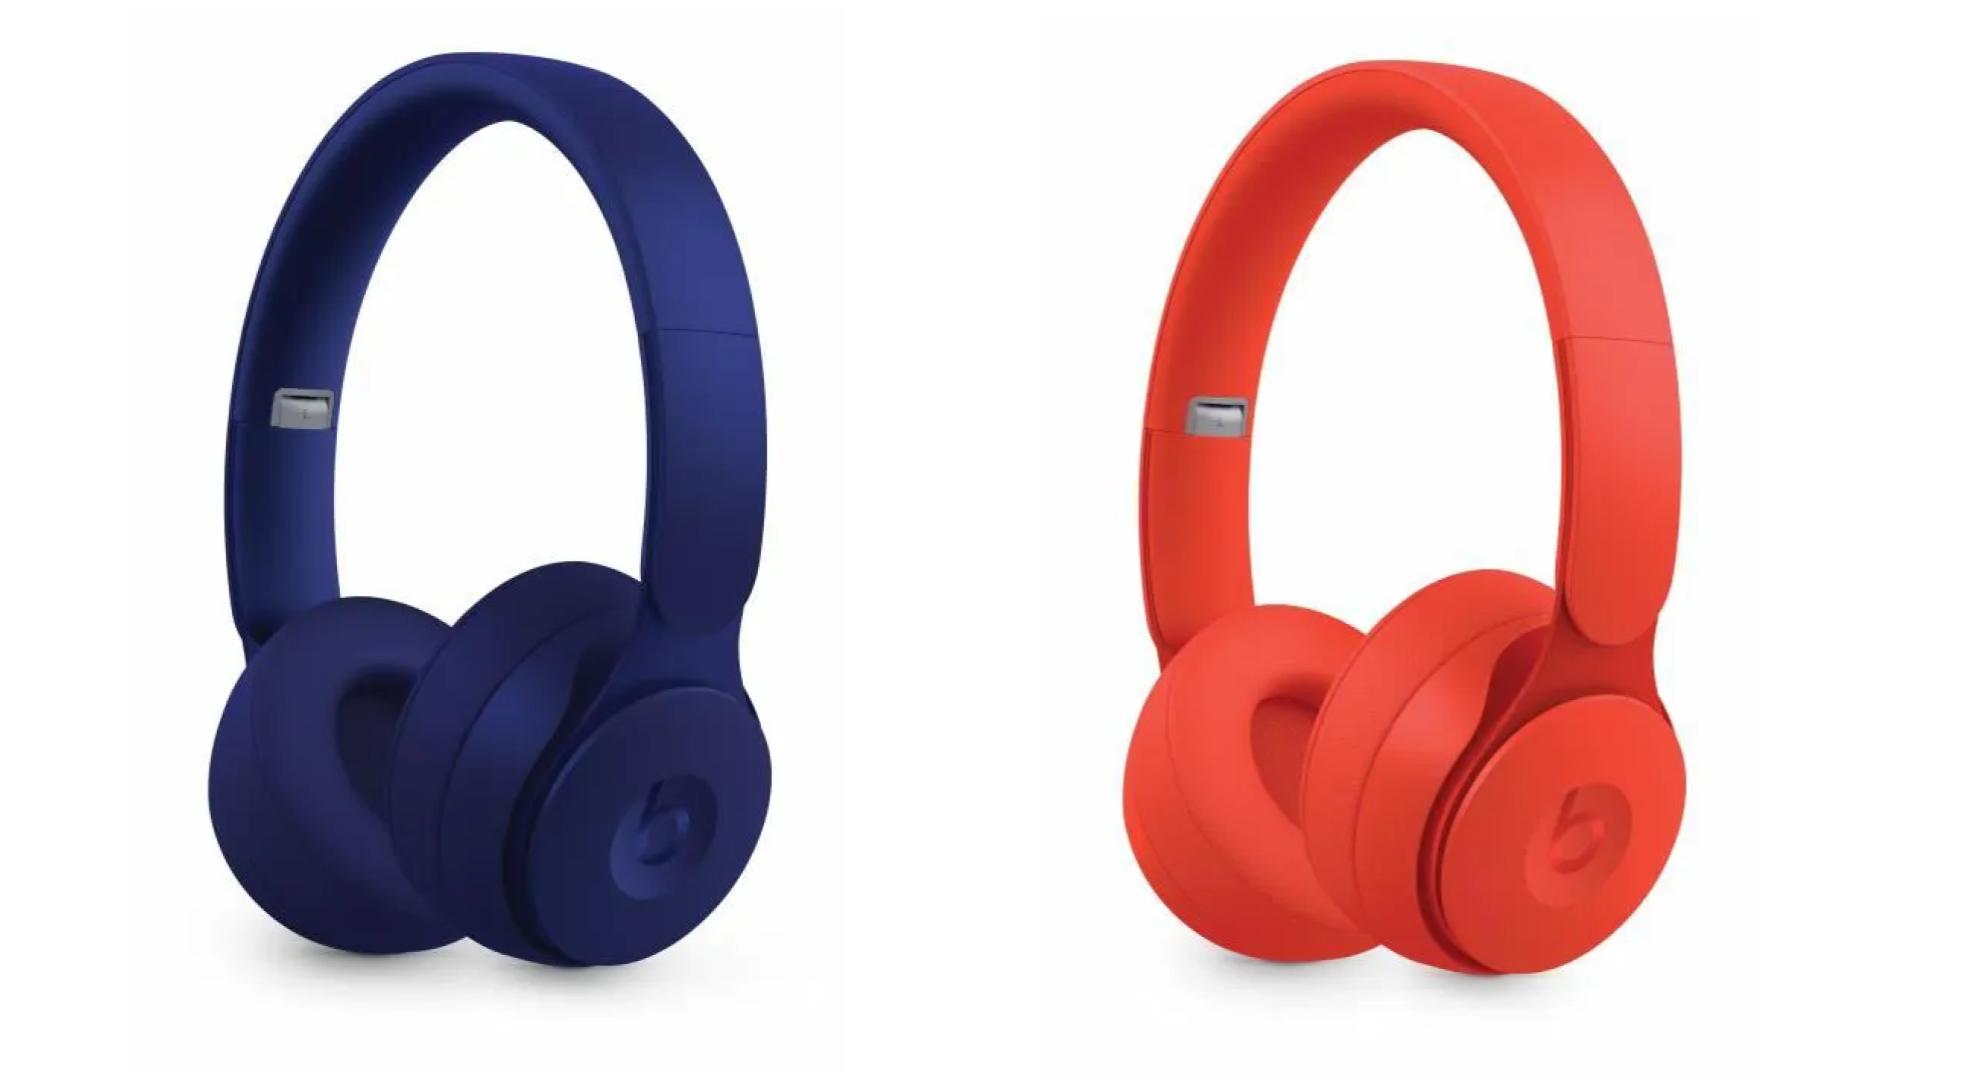 Beats Solo Pro : le casque avec réduction de bruit est presque à moitié prix